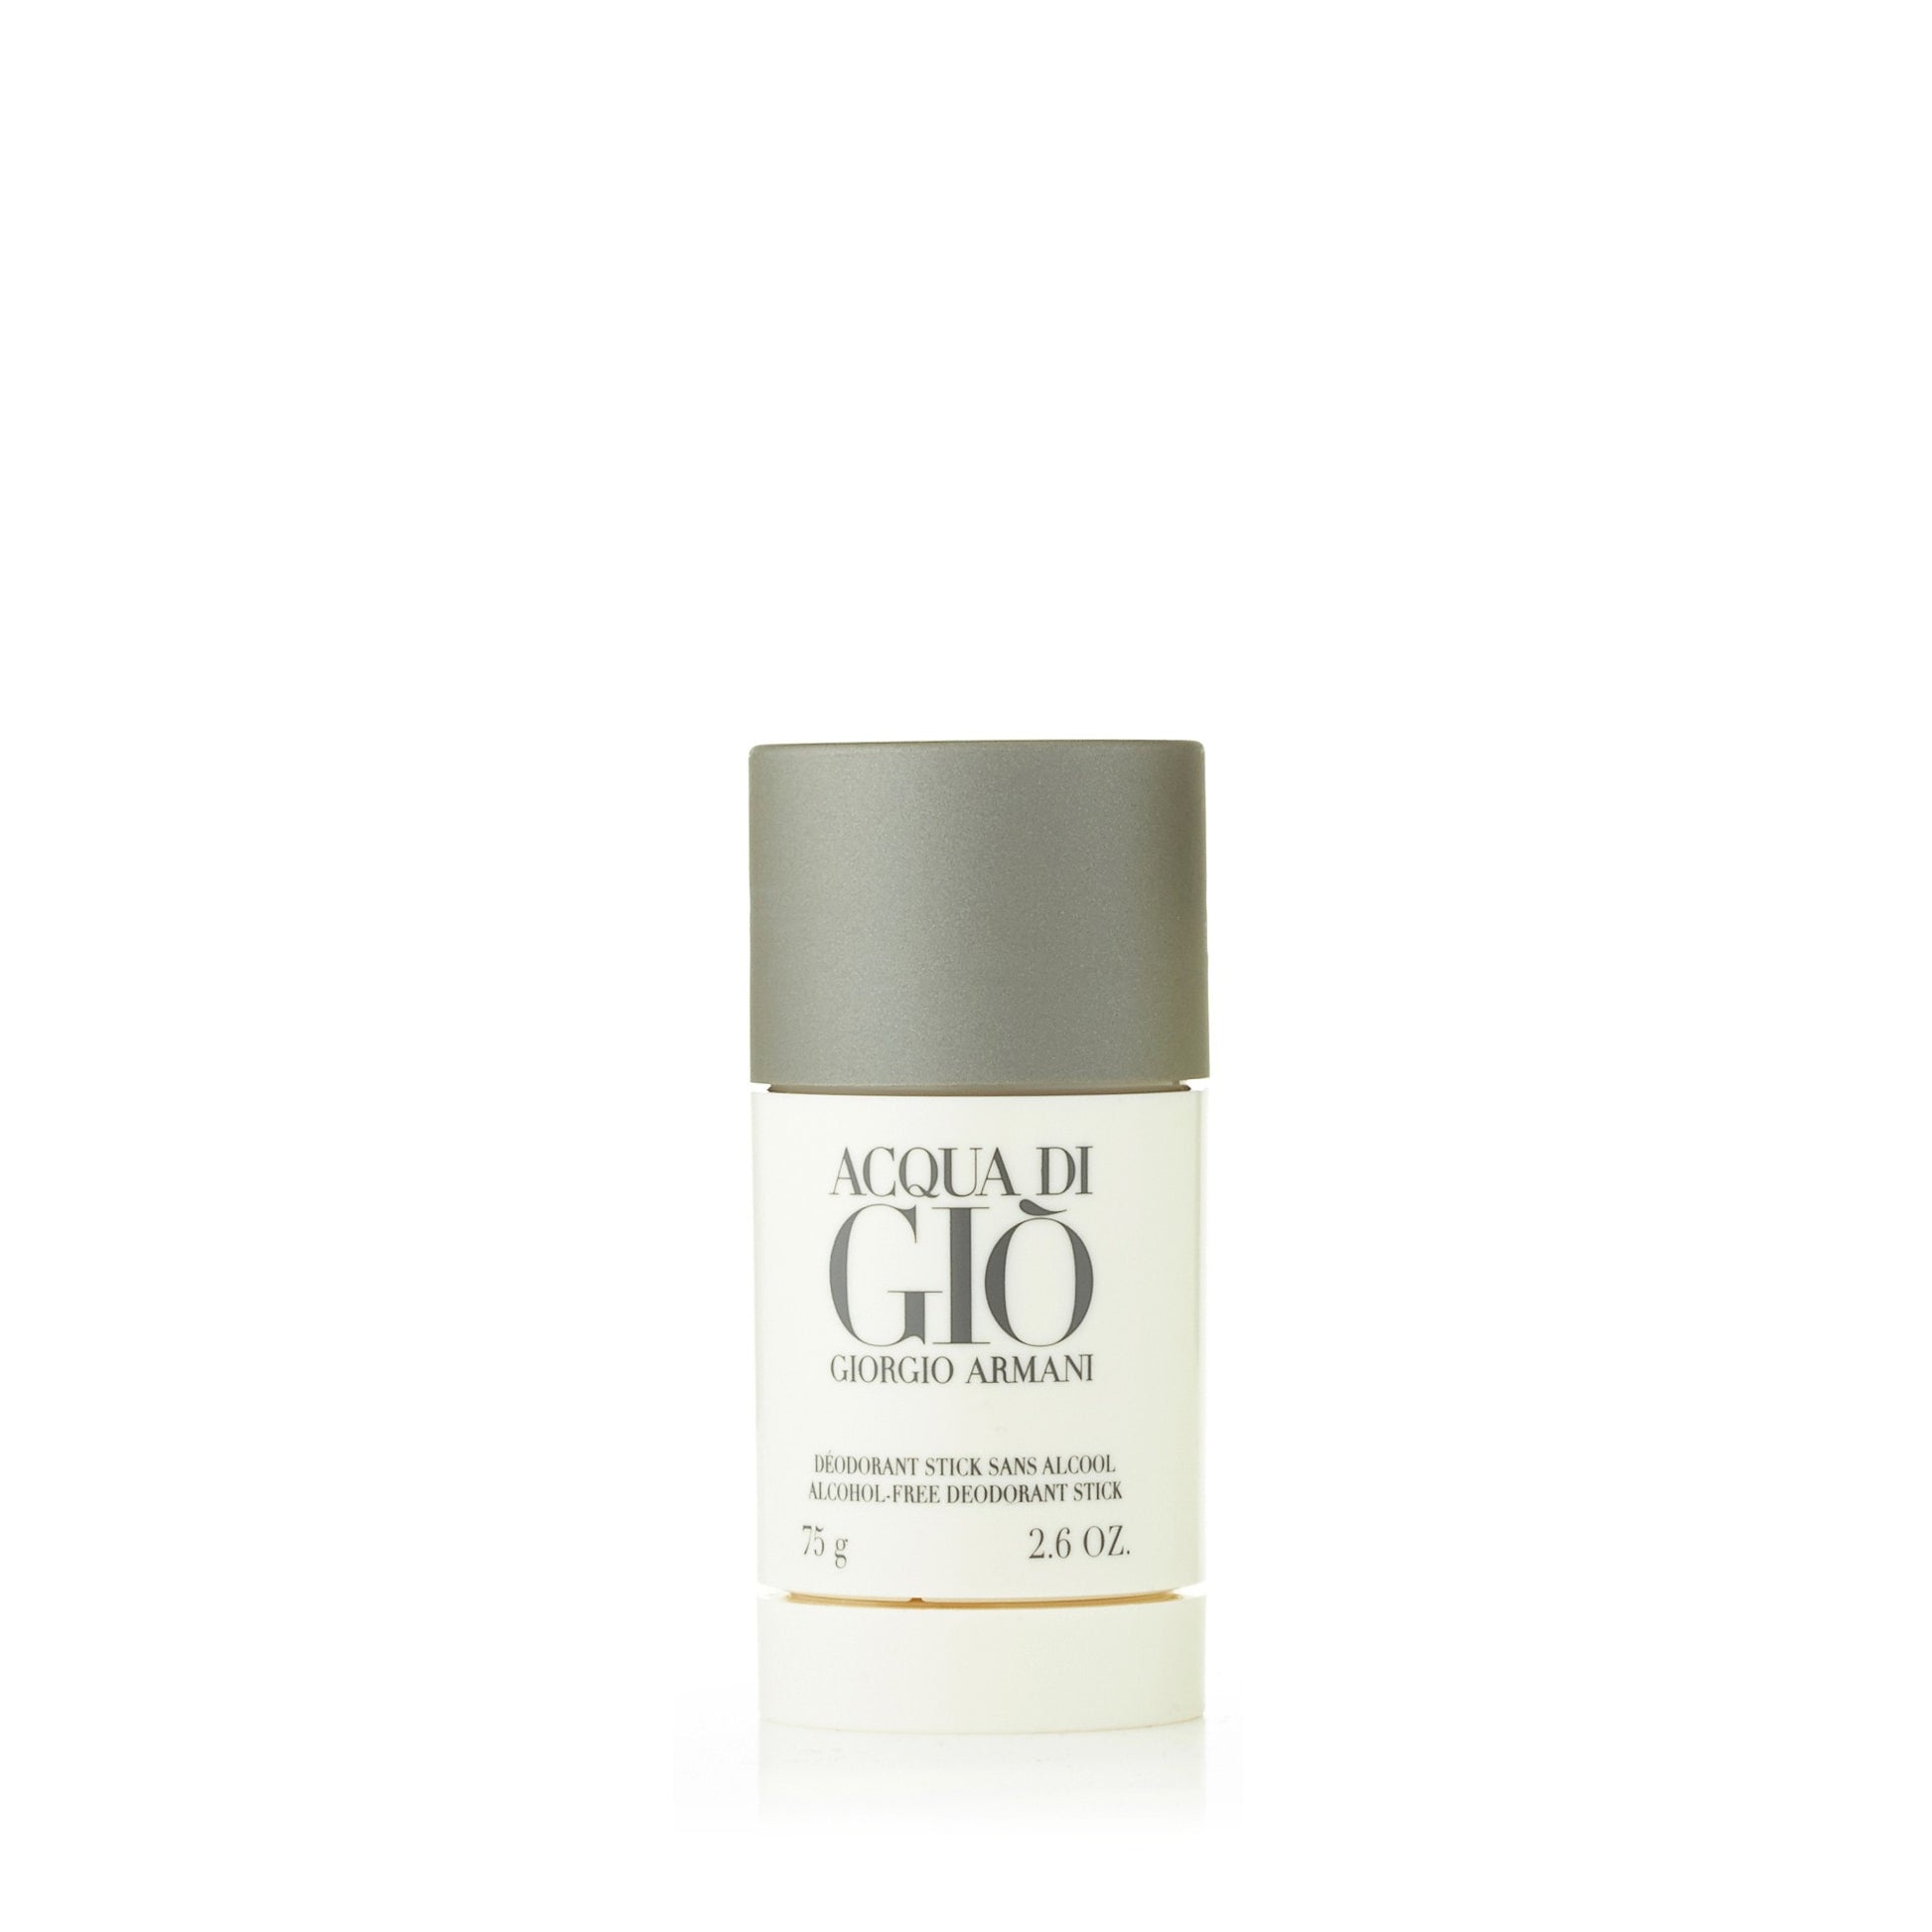 Acqua Di Gio Deodorant for Men by Giorgio Armani, Product image 1